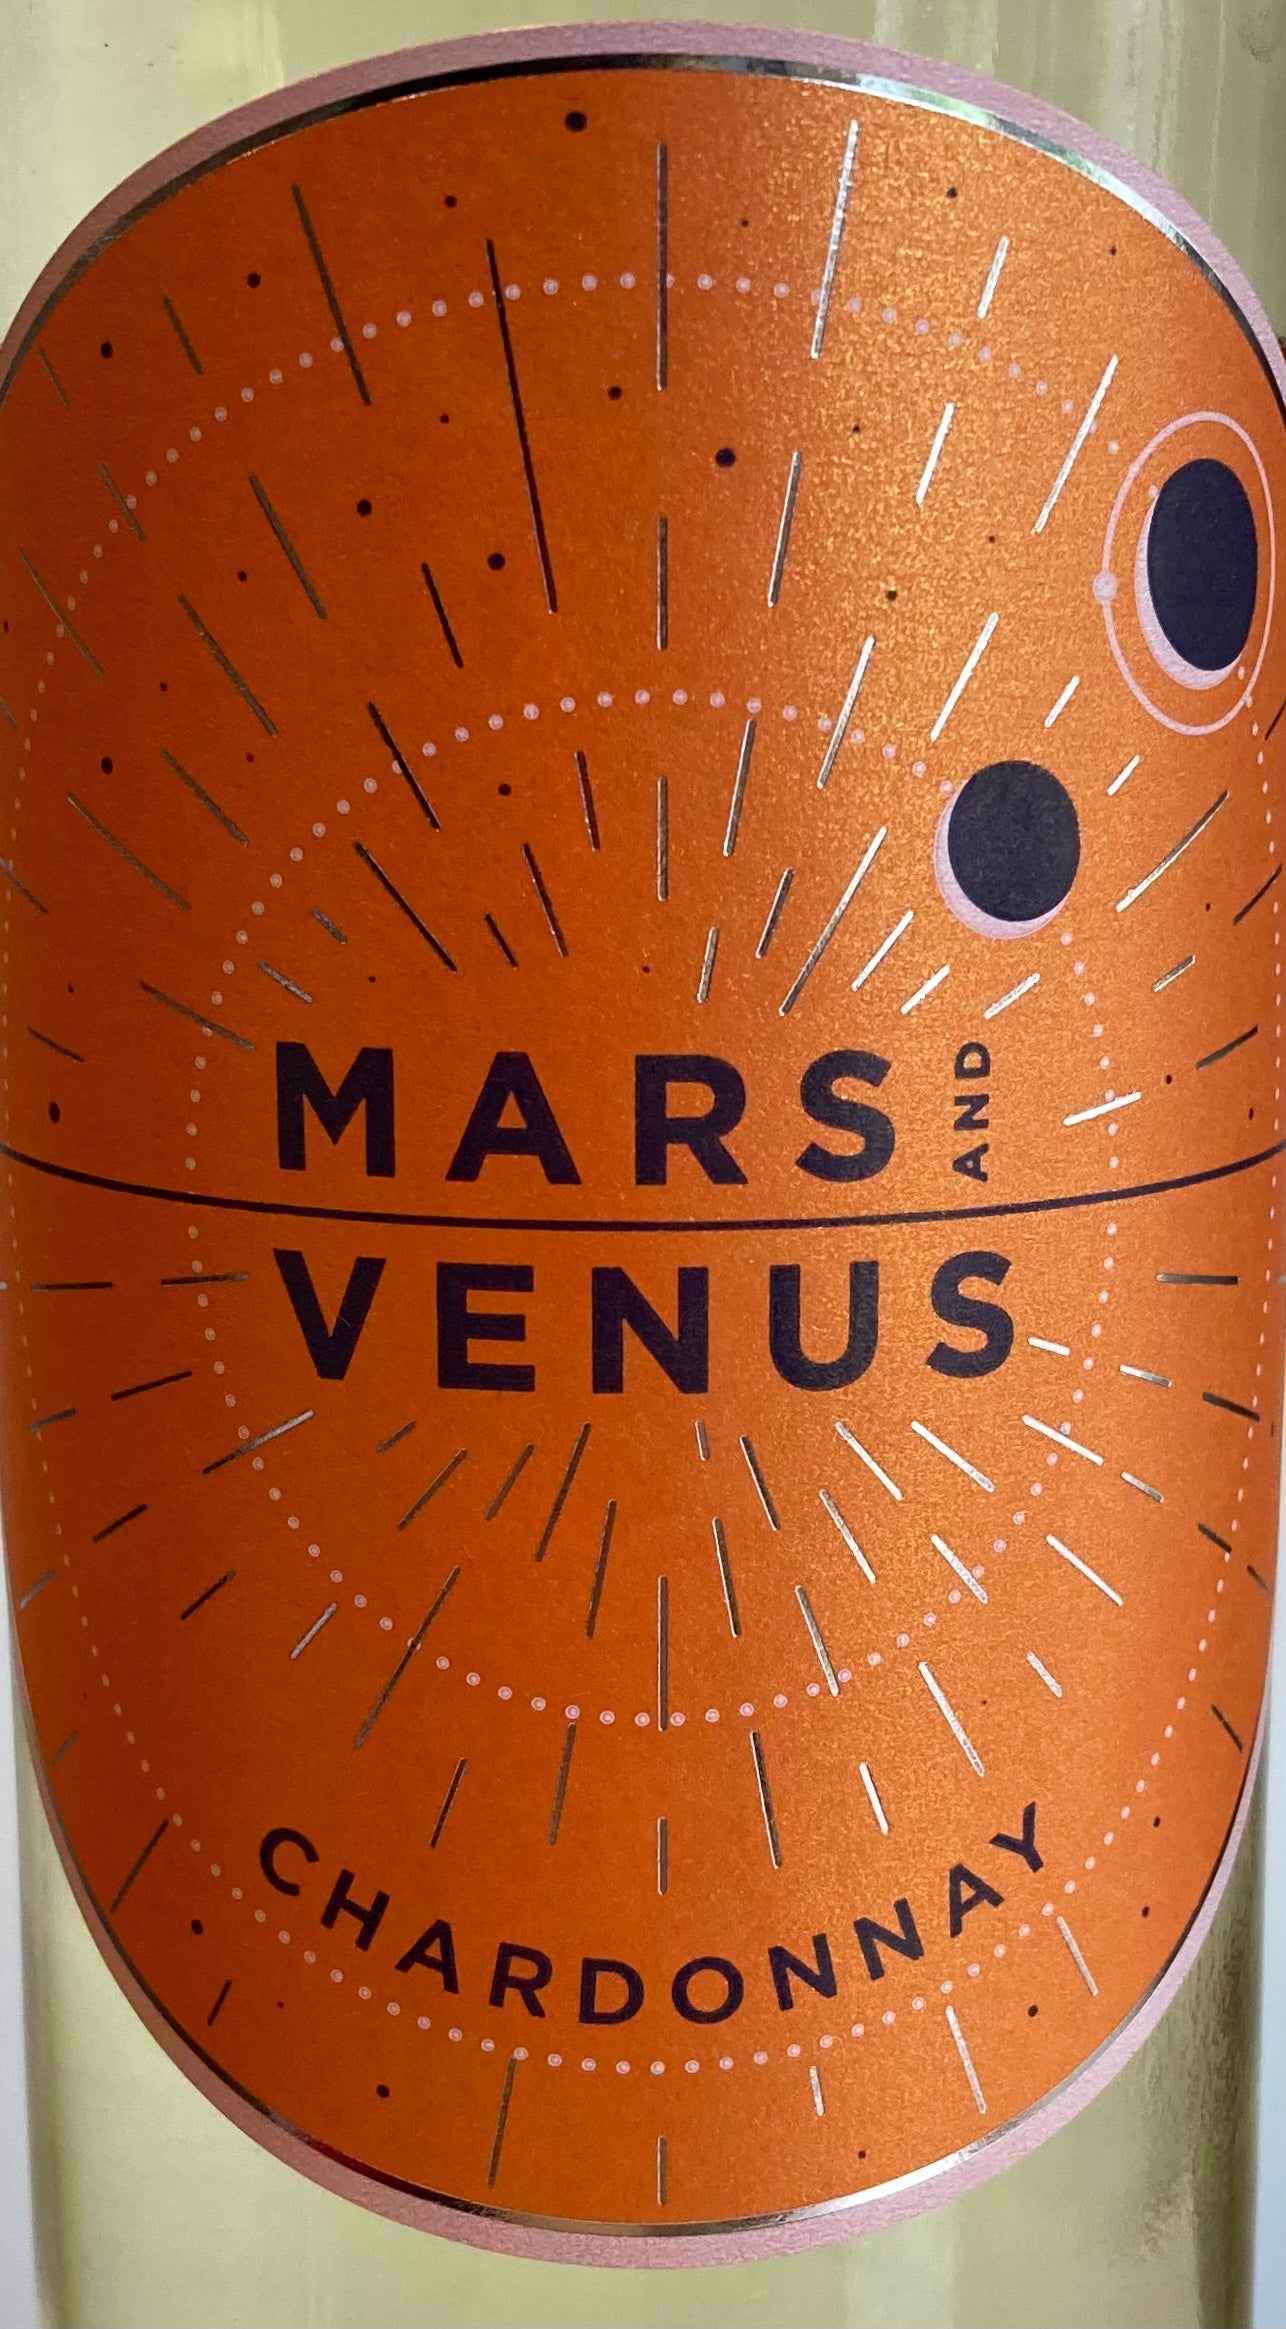 Mars and Venus - Chardonnay